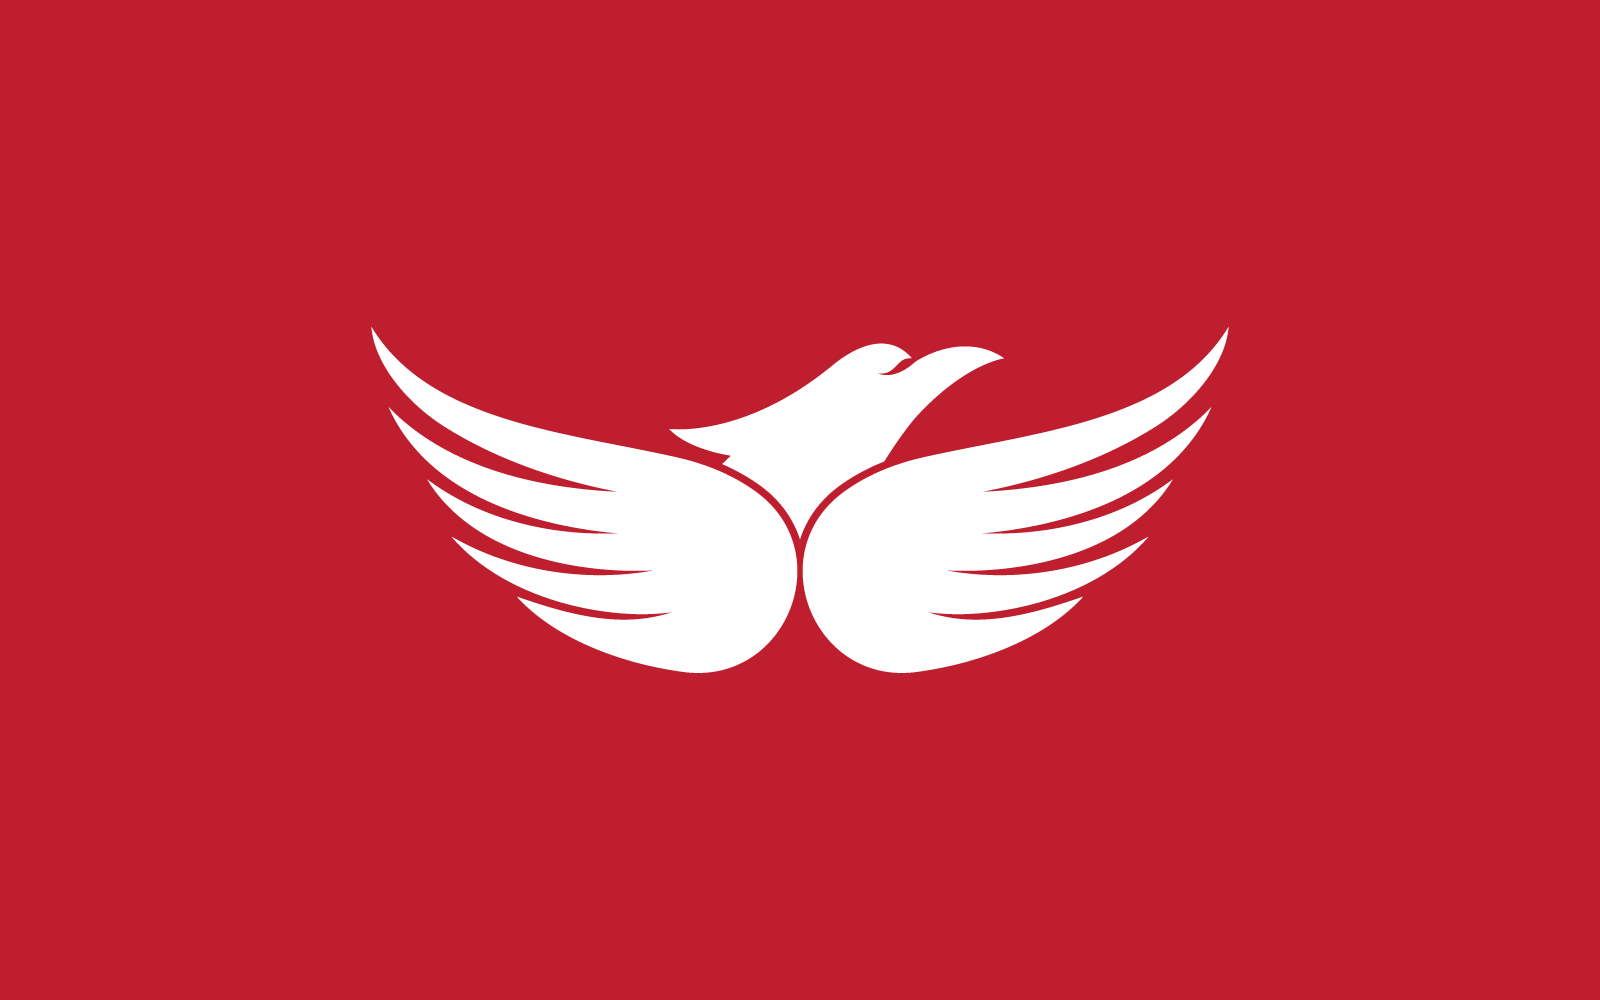 Falcon eagle bird illustration logo design vector template Logo Template